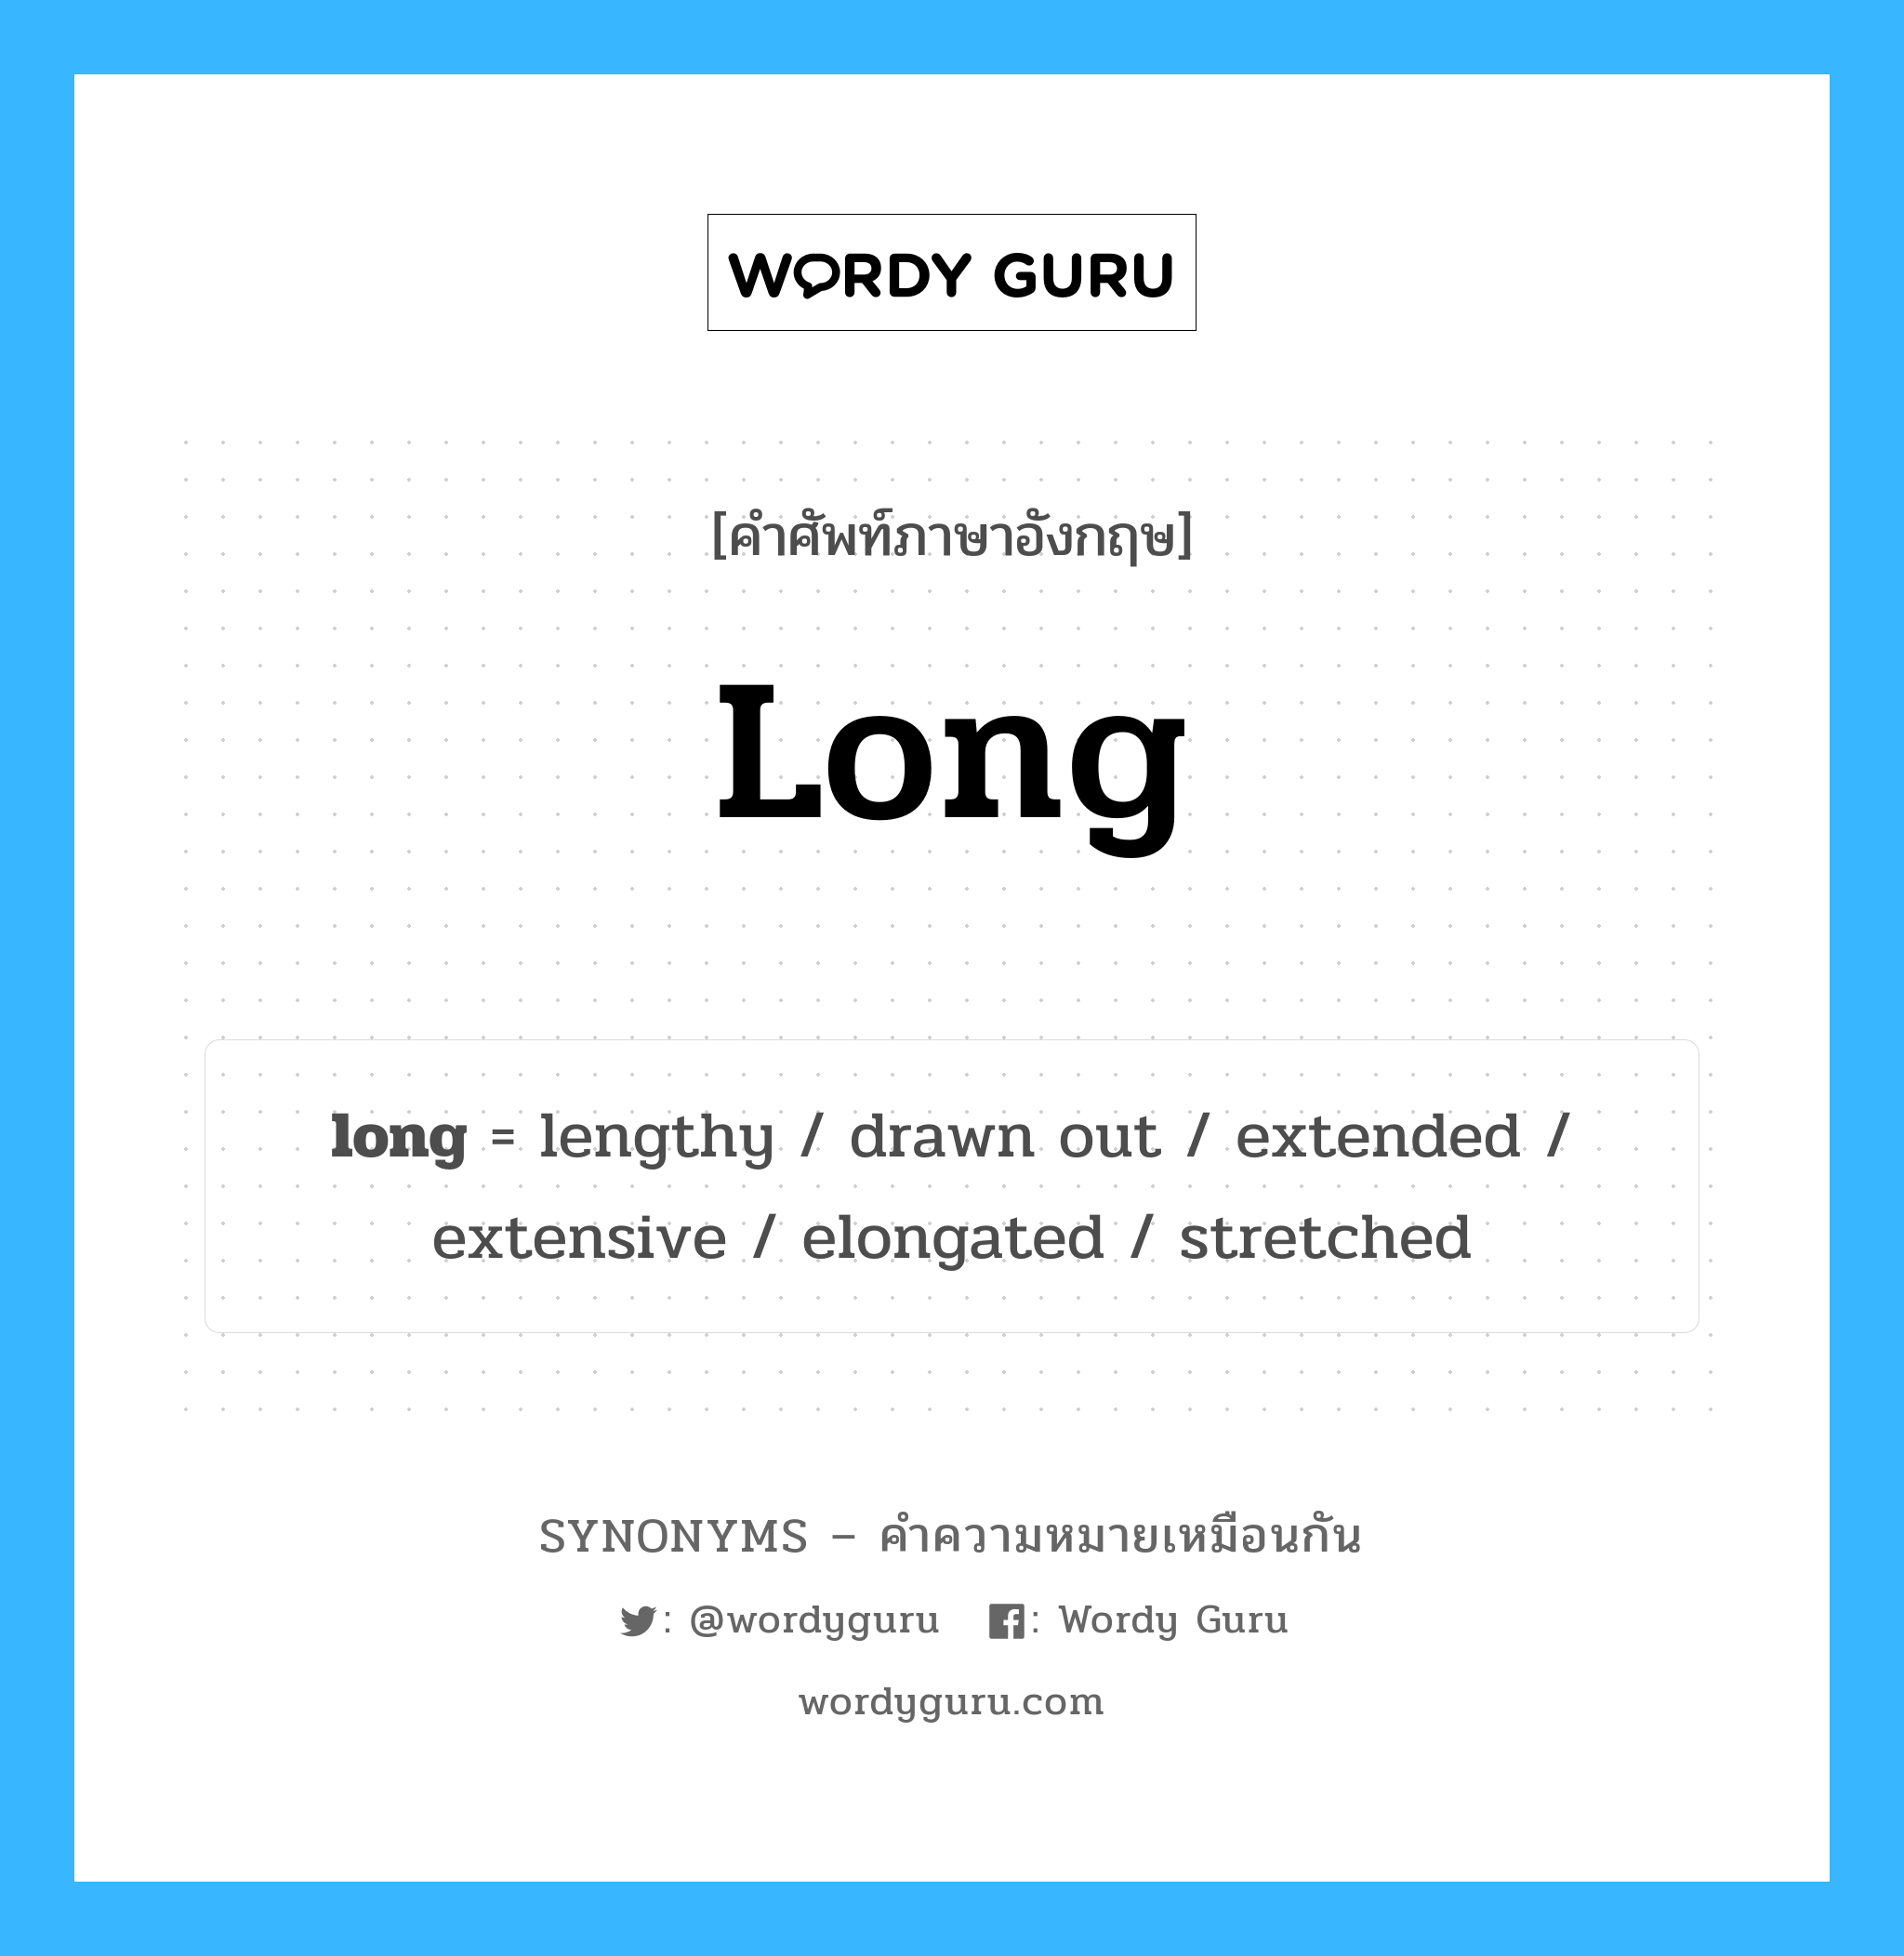 extended เป็นหนึ่งใน long และมีคำอื่น ๆ อีกดังนี้, คำศัพท์ภาษาอังกฤษ extended ความหมายคล้ายกันกับ long แปลว่า ขยาย หมวด long